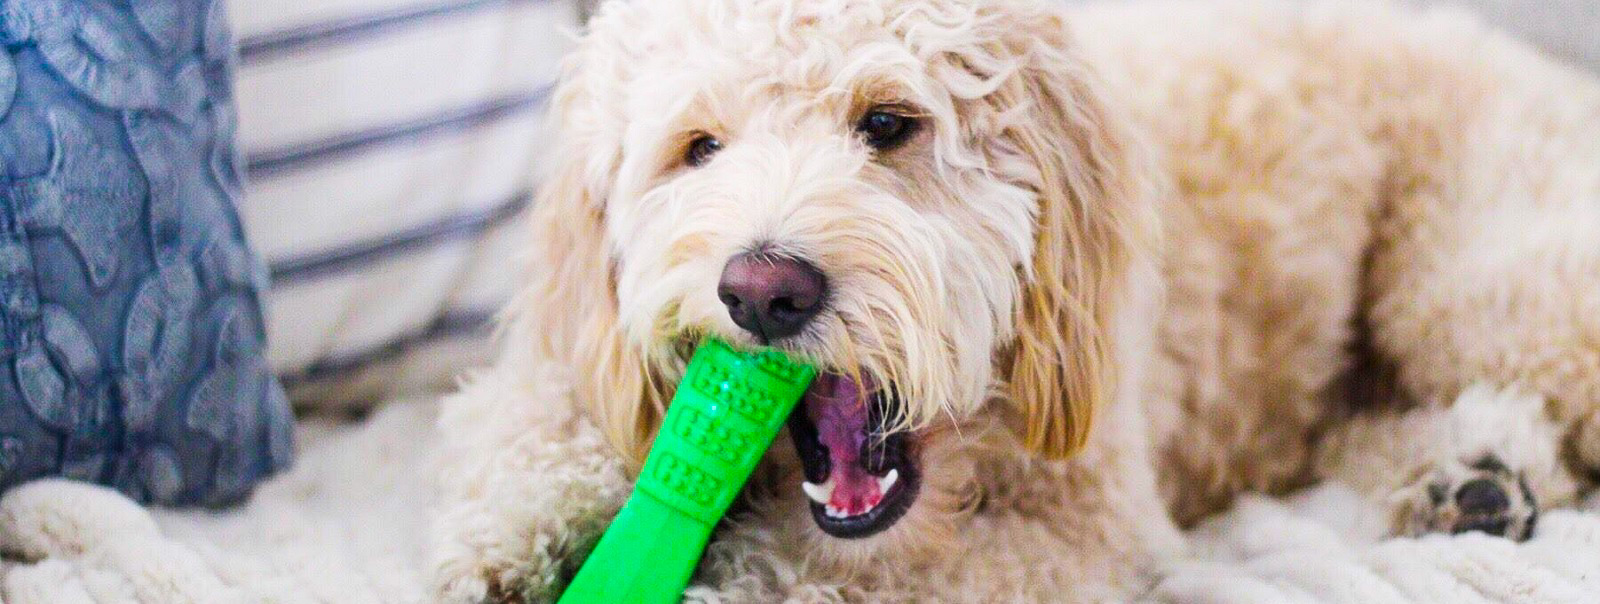 Bristly - інноваційна зубна щітка для собак